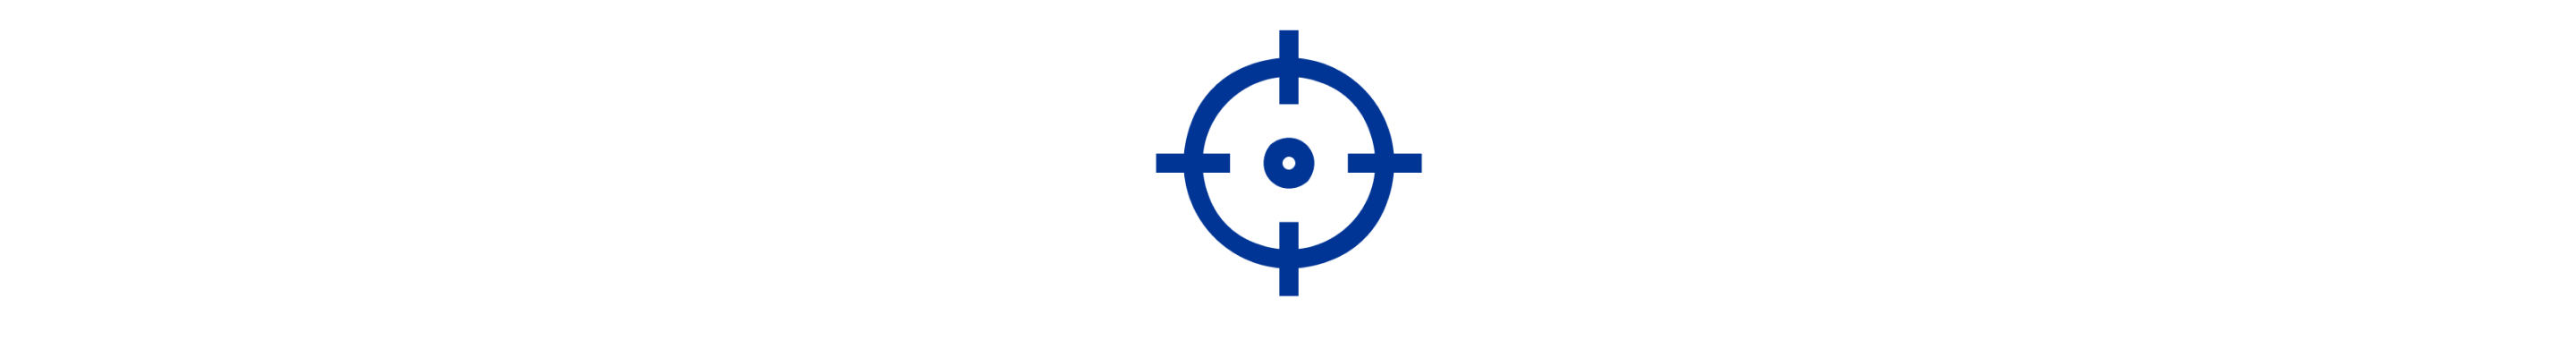 Ein blaues Symbol für ein Bullseye-Ziel.